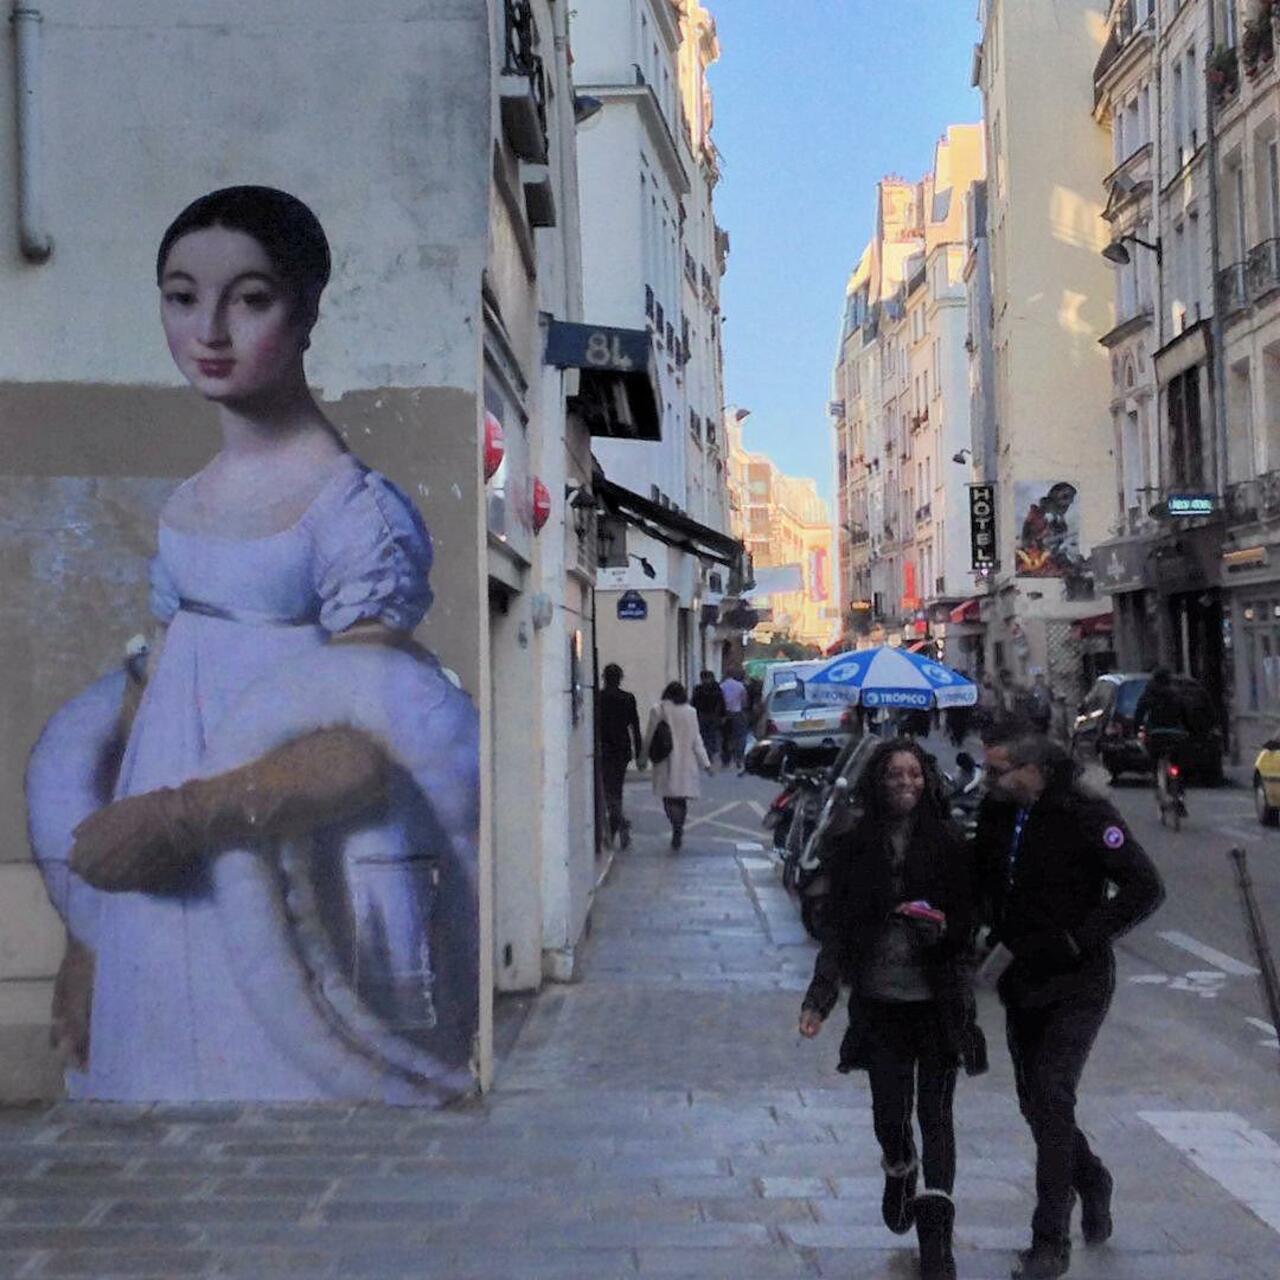 #Paris #graffiti photo by @joecoolpix http://ift.tt/1j6HvIr #StreetArt http://t.co/Ms7oc0TTMT